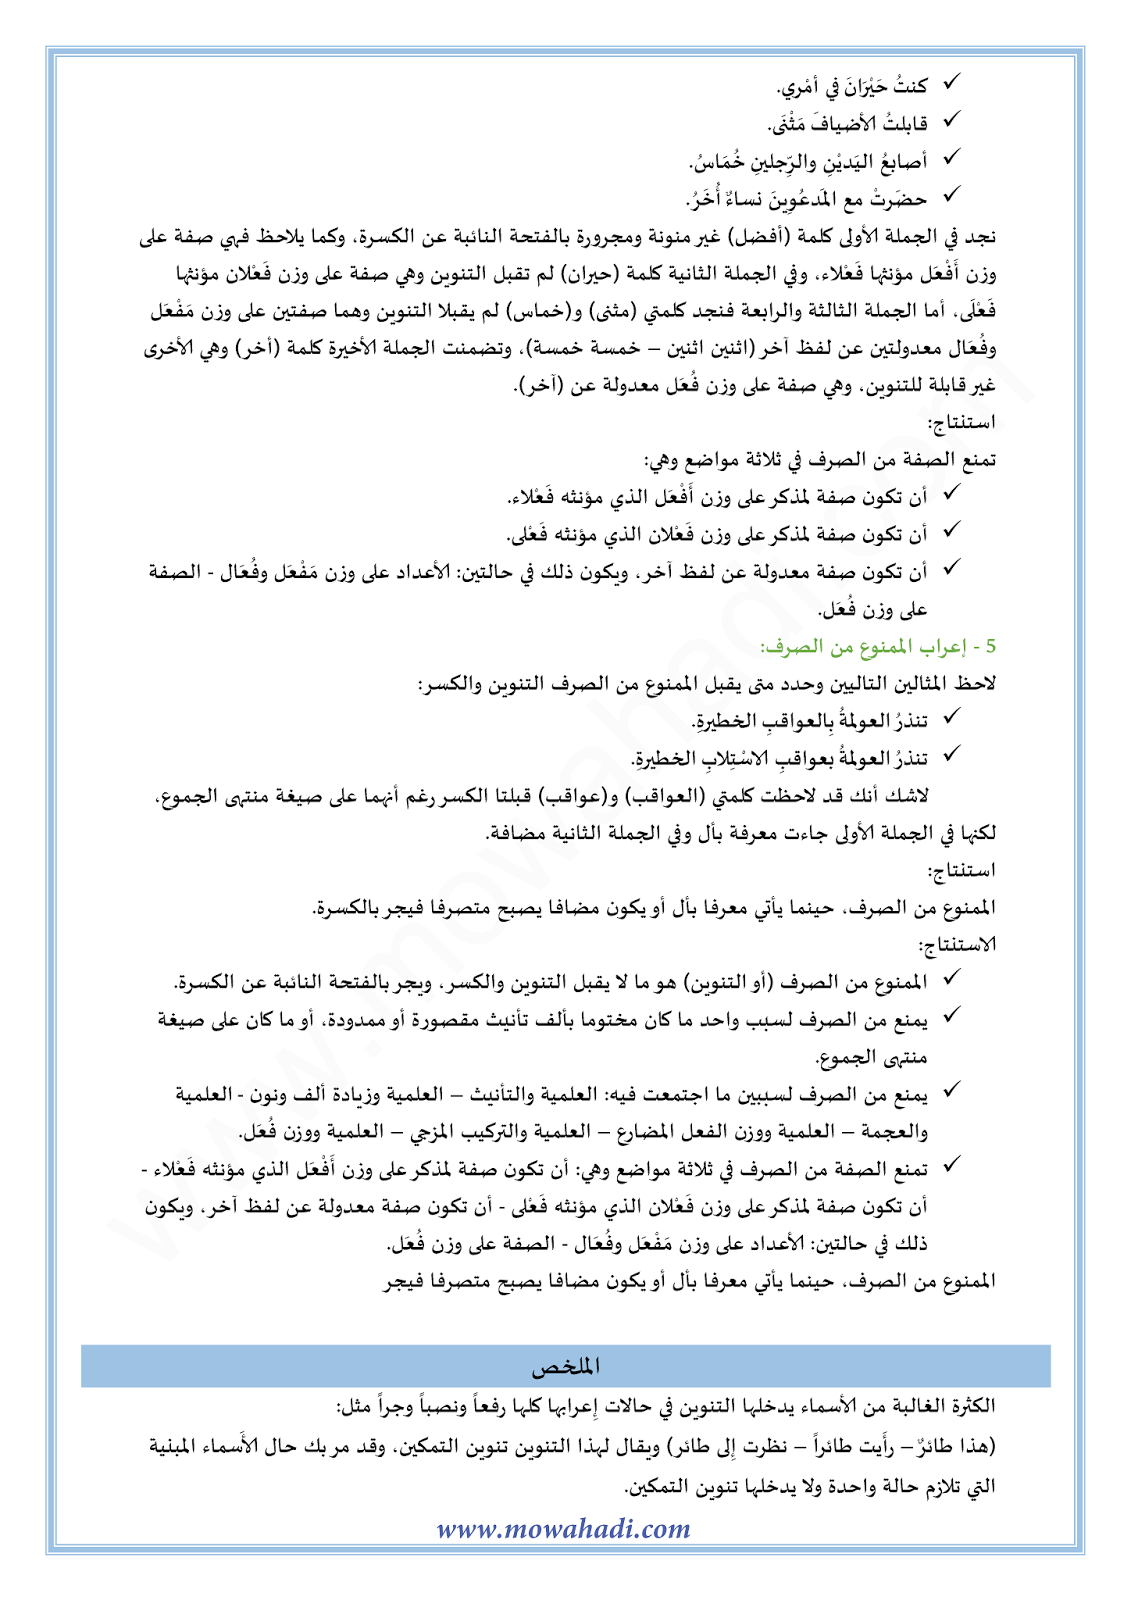 الدرس اللغوي الممنوع من الصرف للسنة الثالثة اعدادي في مادة اللغة العربية 7-cours-dars-loghawi3_002